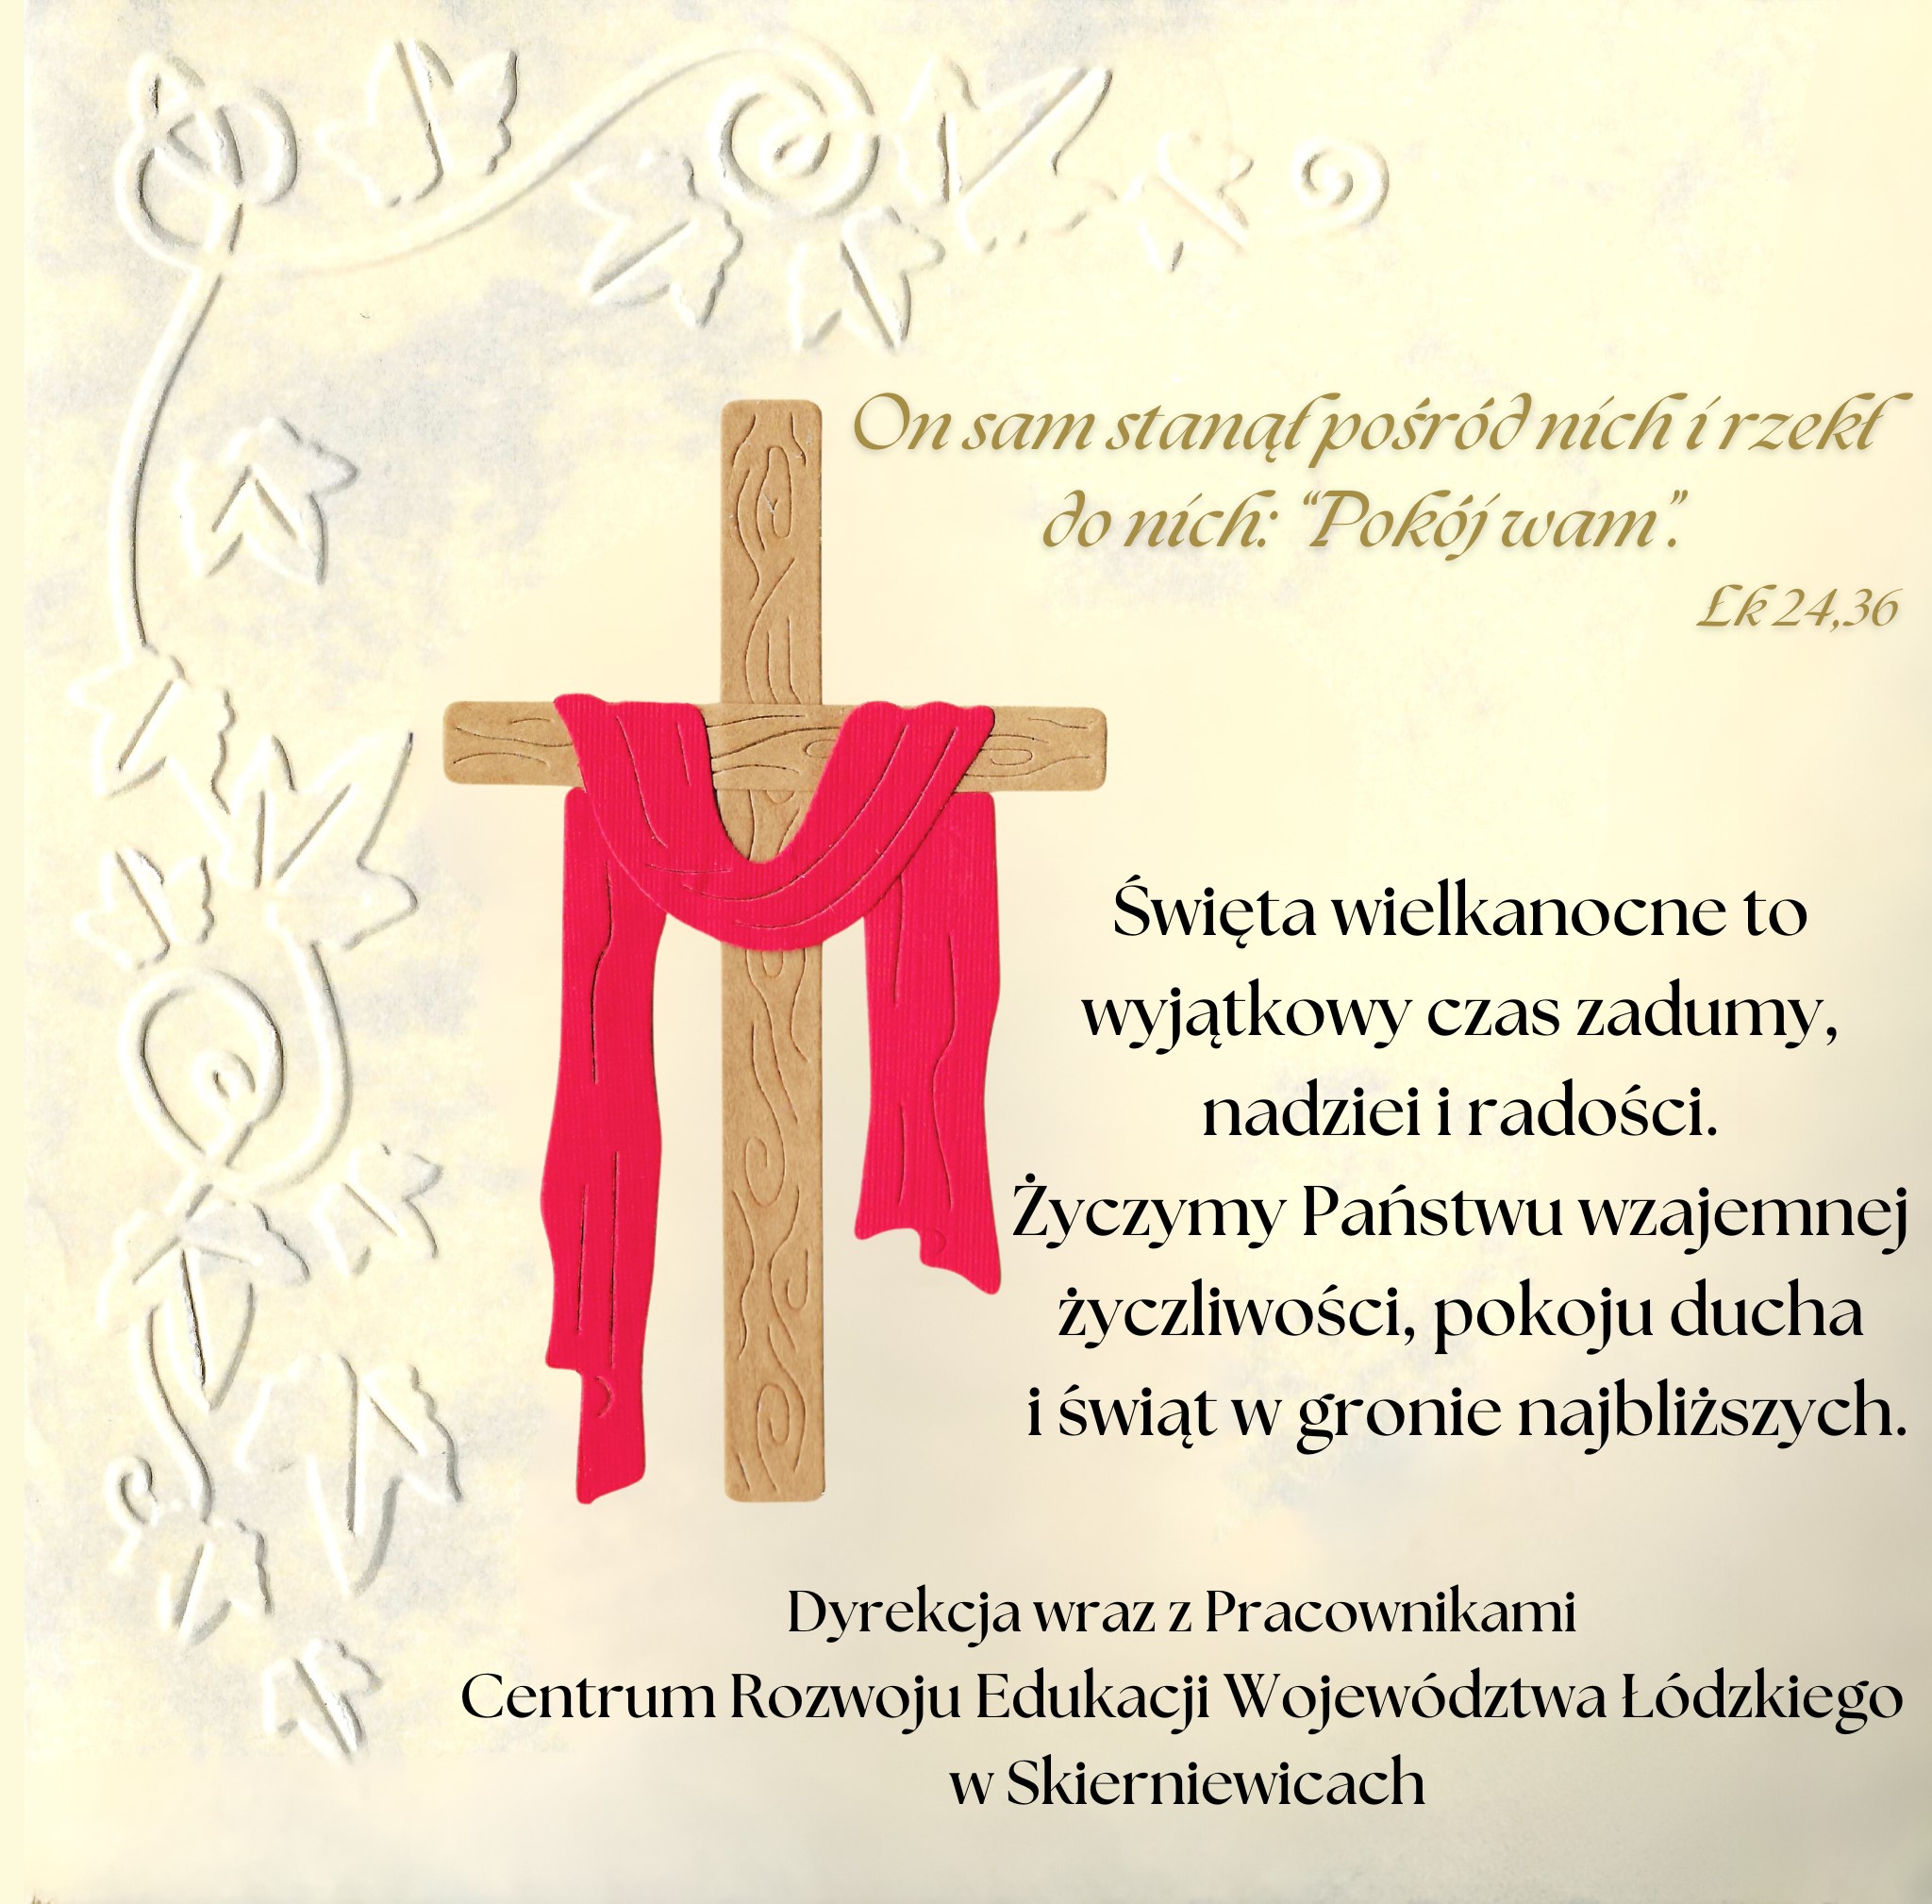 Grafika z krzyżem i życzeniami wielkanocnymi od dyrekcji i pracowników Centrum Rozwoju Edukacji Województwa Łódzkiego w Skierniewicach.